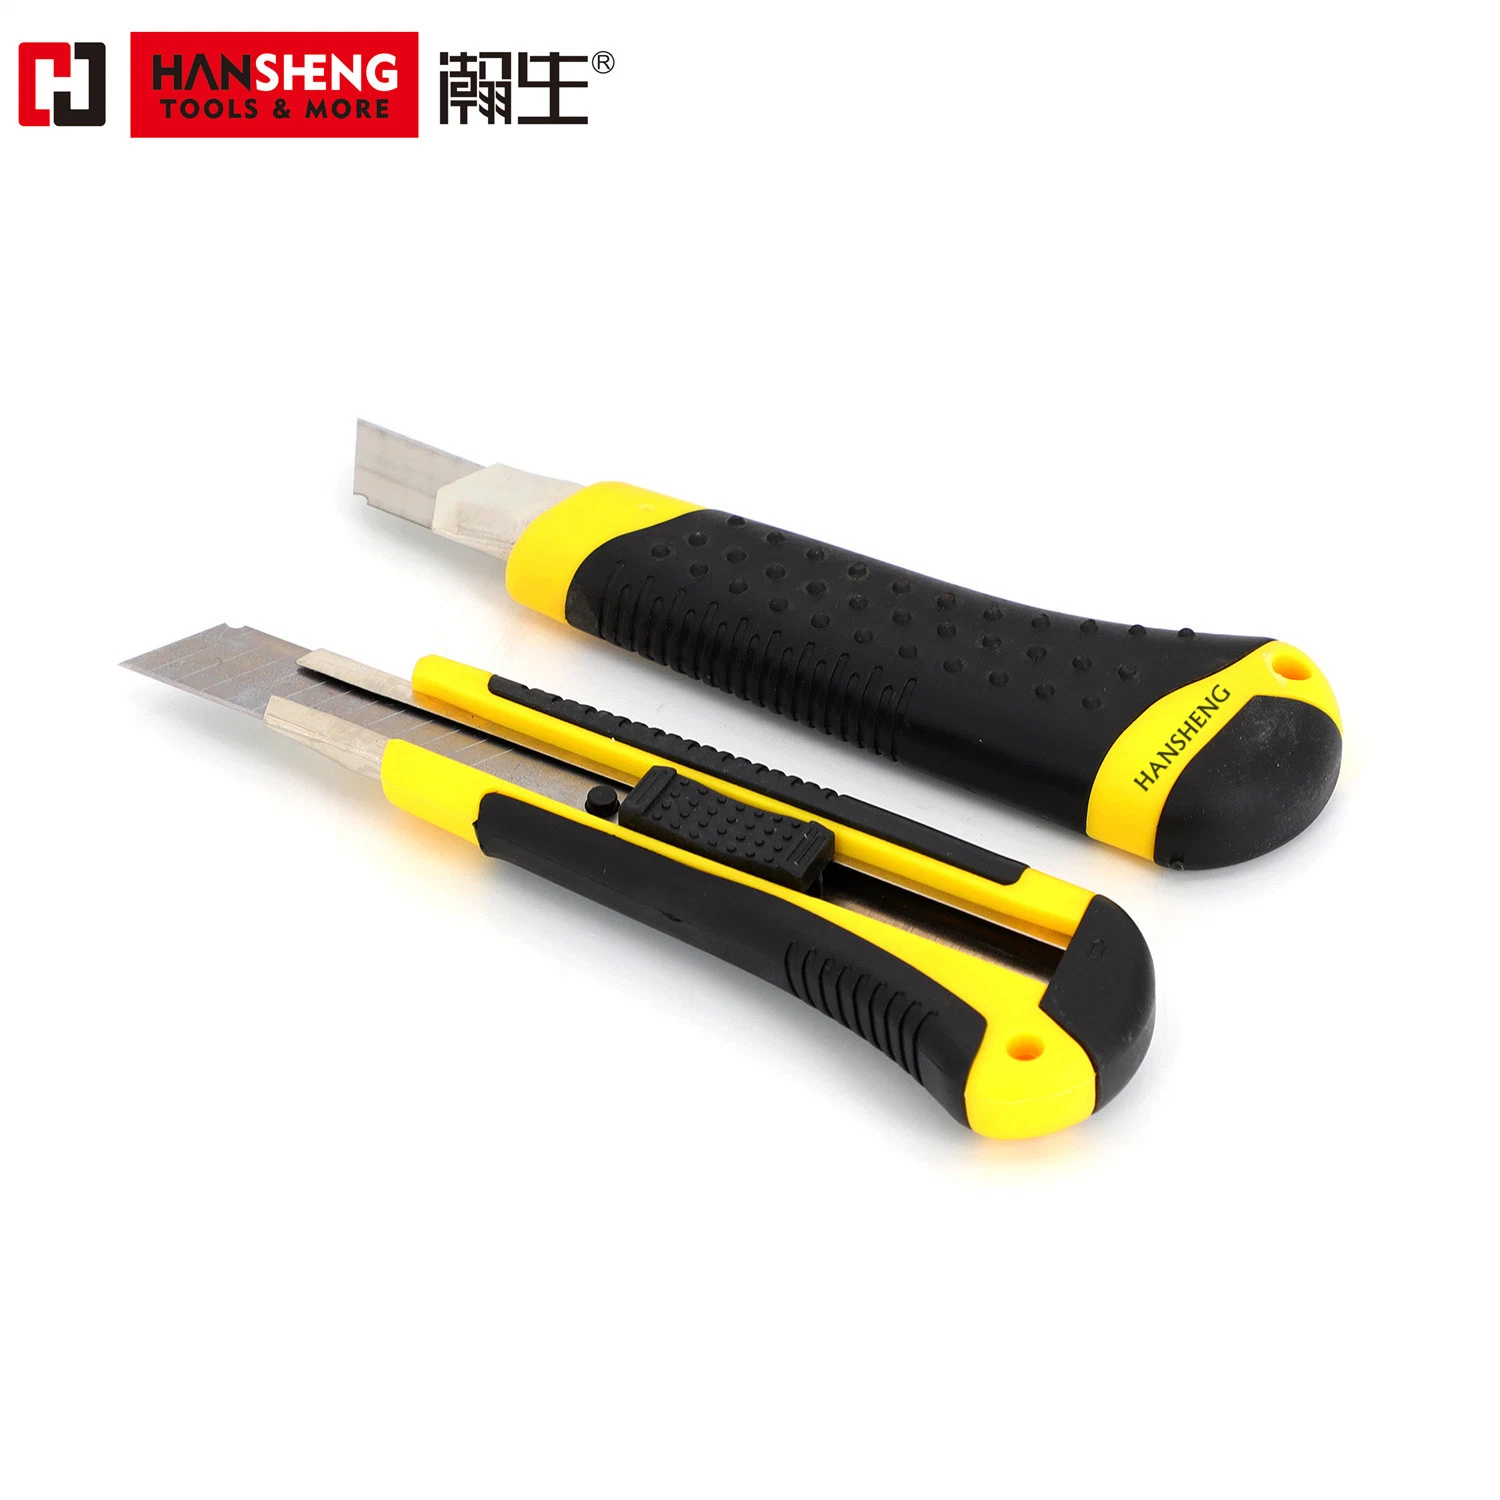 Универсальный нож/Art нож, защелкой Blade пластиковый предохранительный Utility резак, TPR пластмассовую ручку в офисе, дома искусств, нож для бумаги, черного и желтого цвета, 18 мм